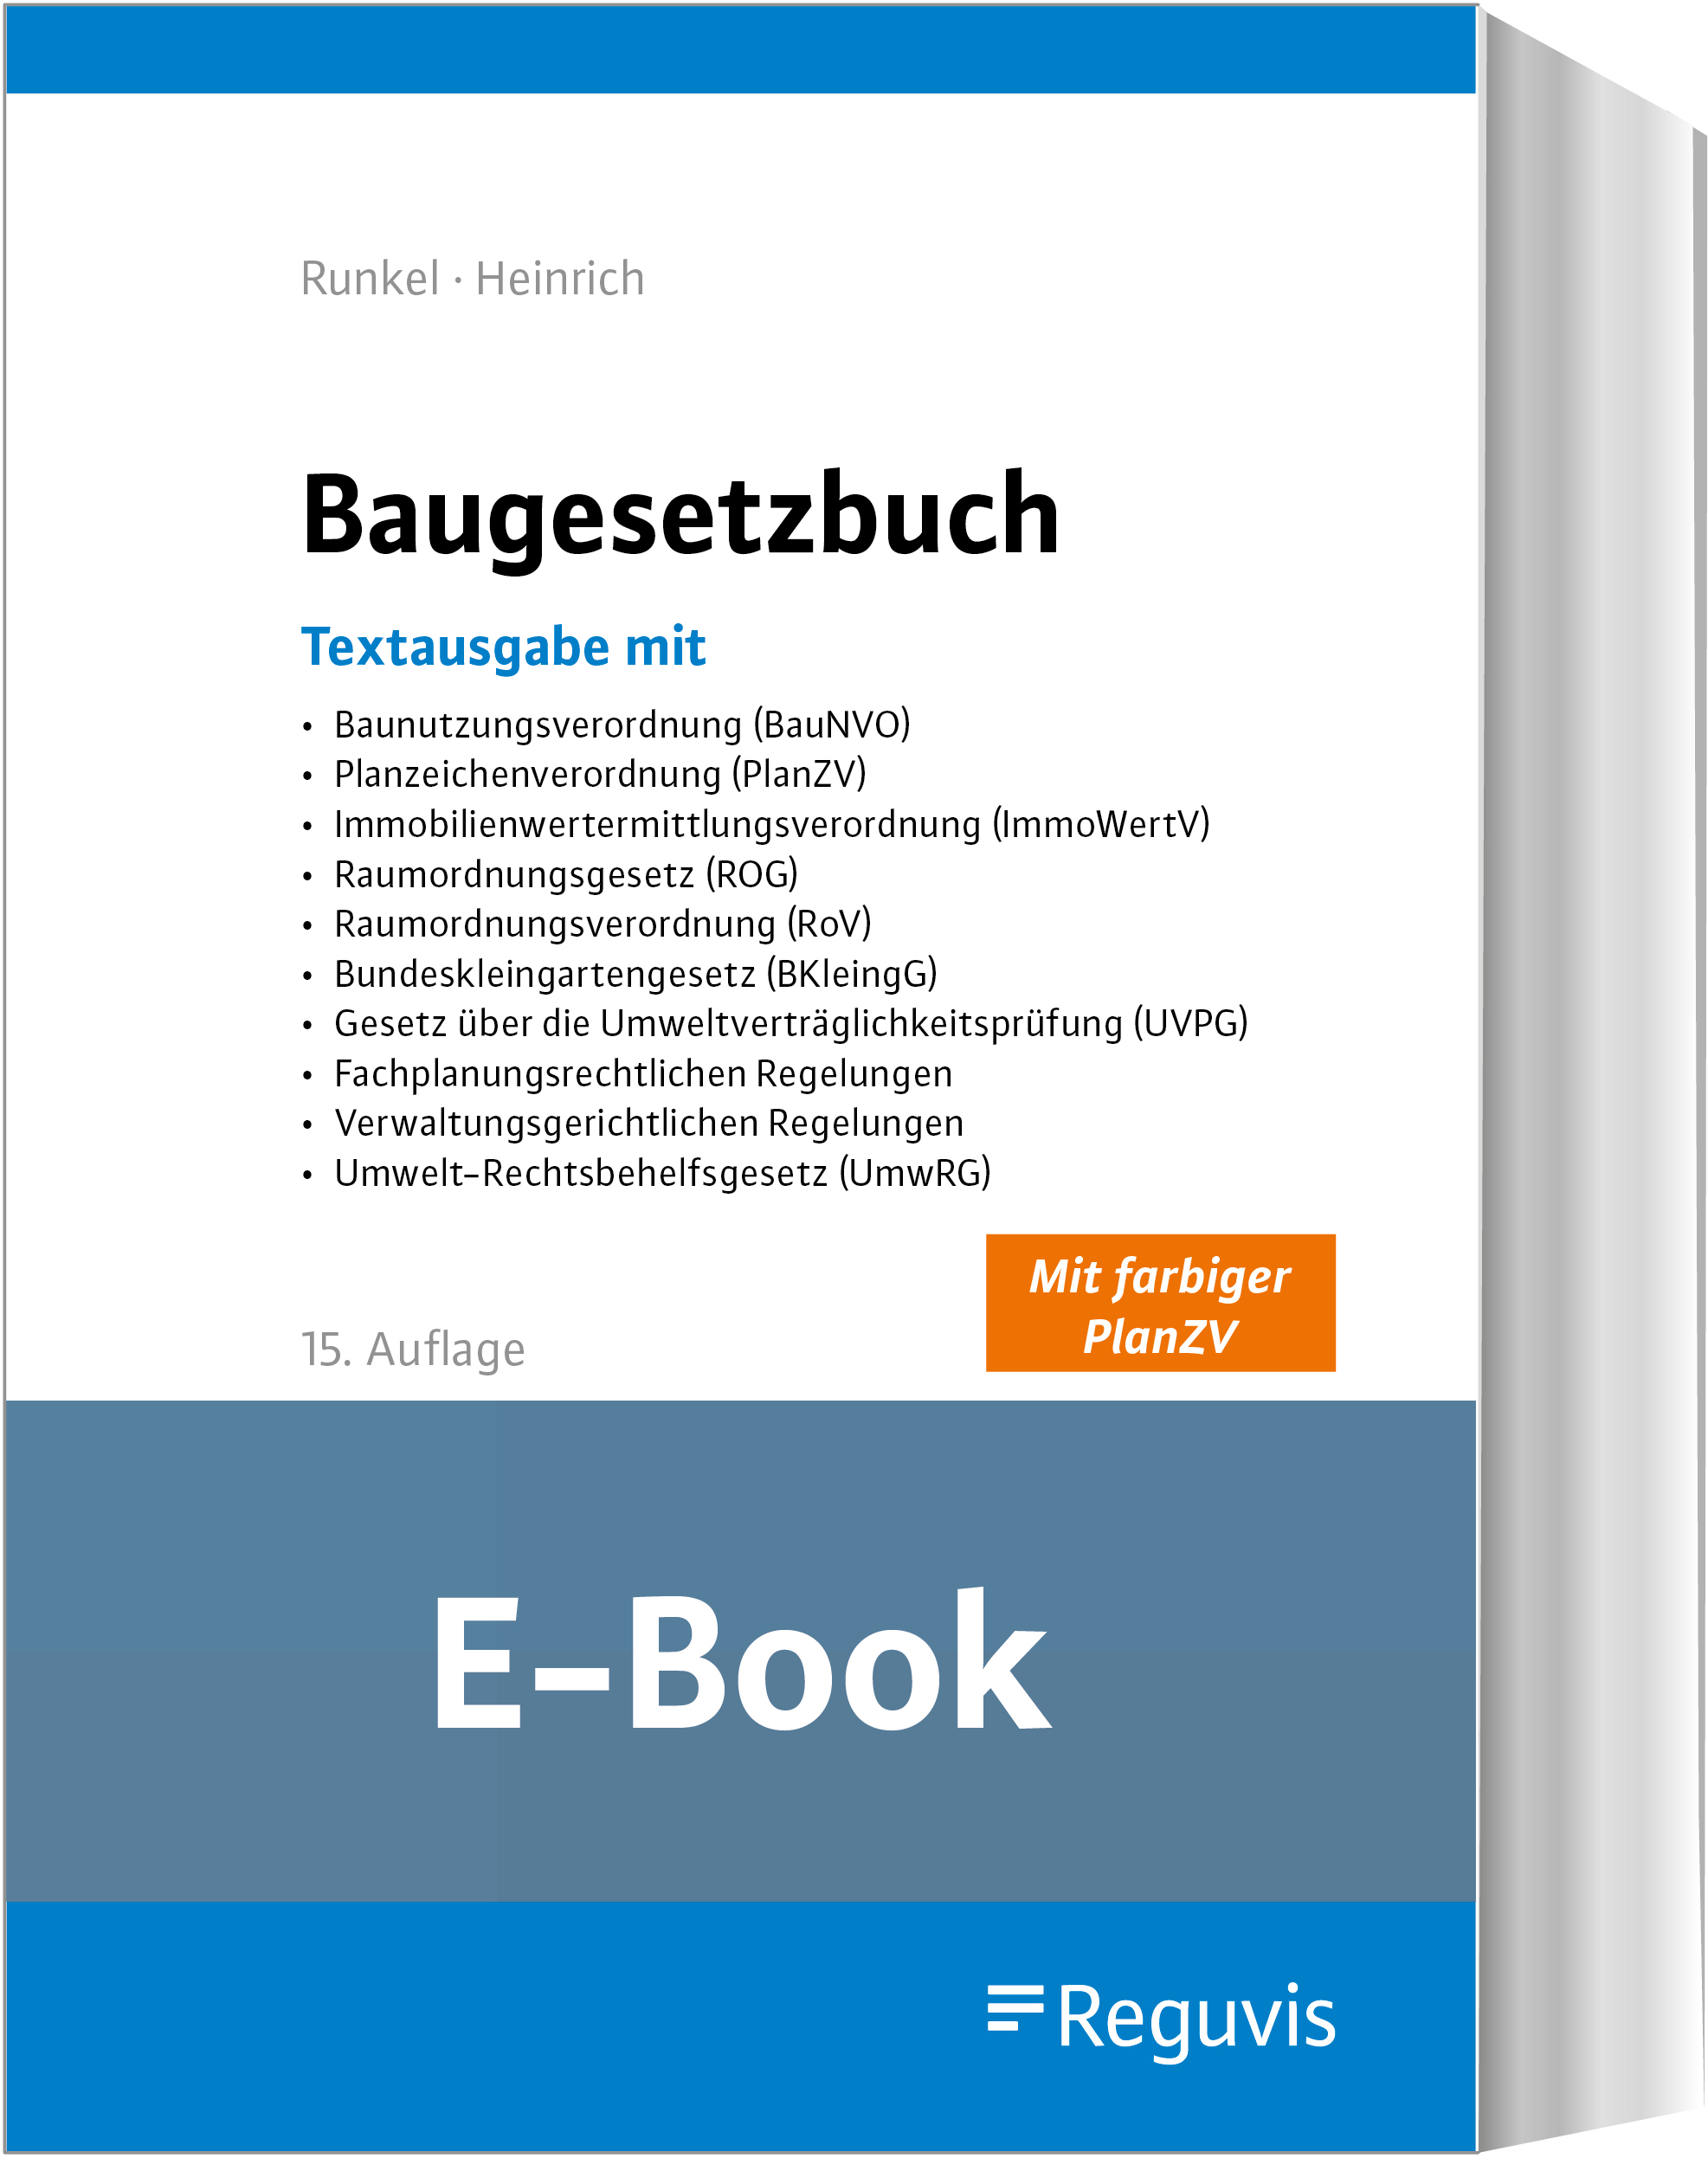 Runkel/Heinrich; Baugesetzbuch E-Book